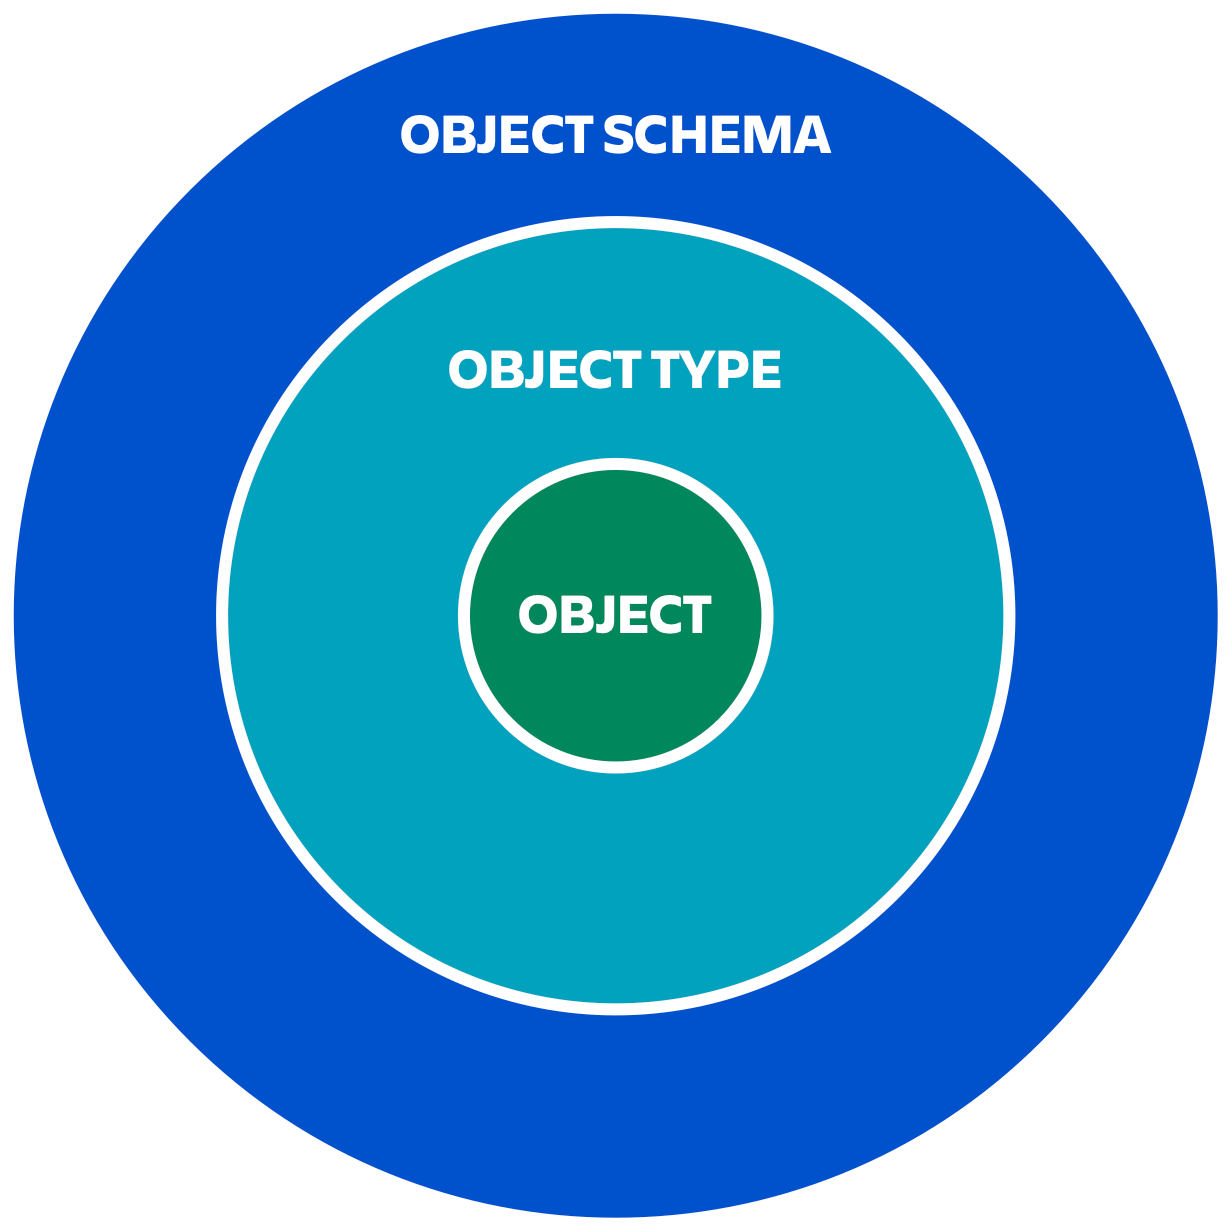 オブジェクトが中央、オブジェクト タイプがその上、オブジェクト スキーマが最も上のレベルにある図